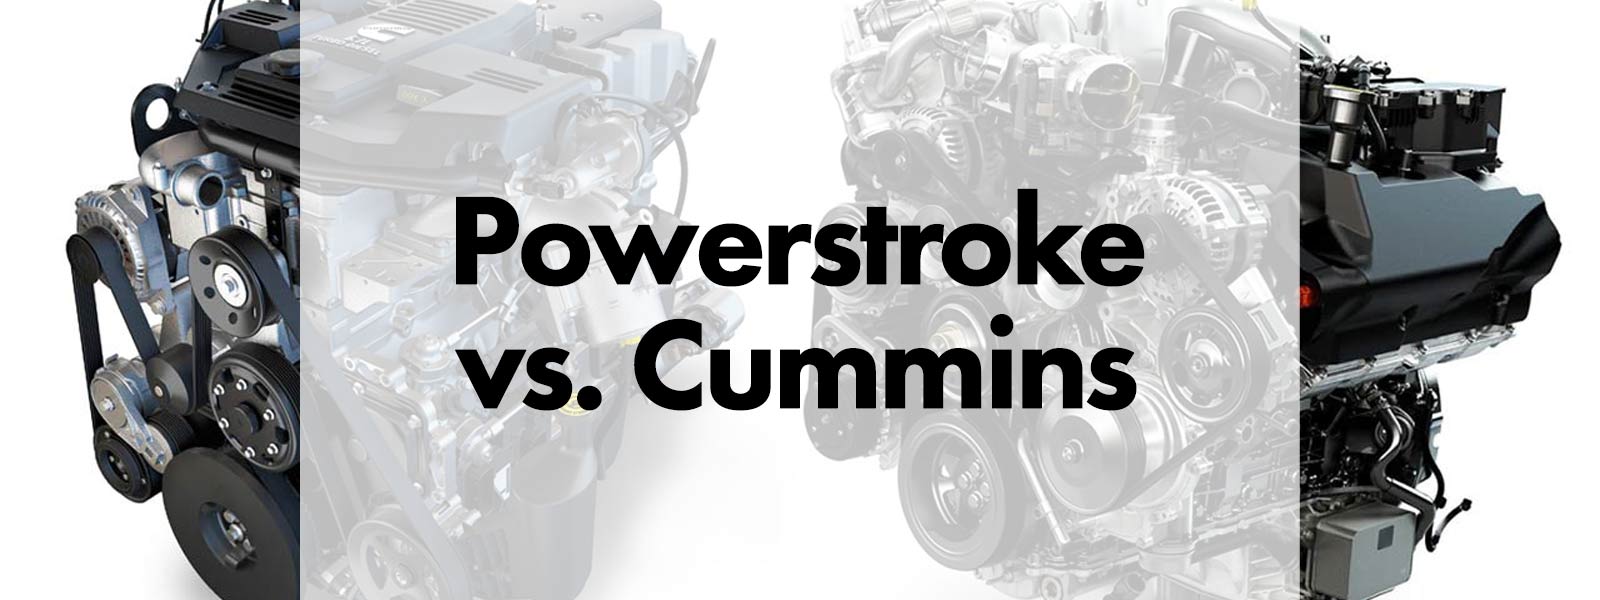 Powerstroke vs. Cummins – How To Choose Between Two Top Diesel Engines